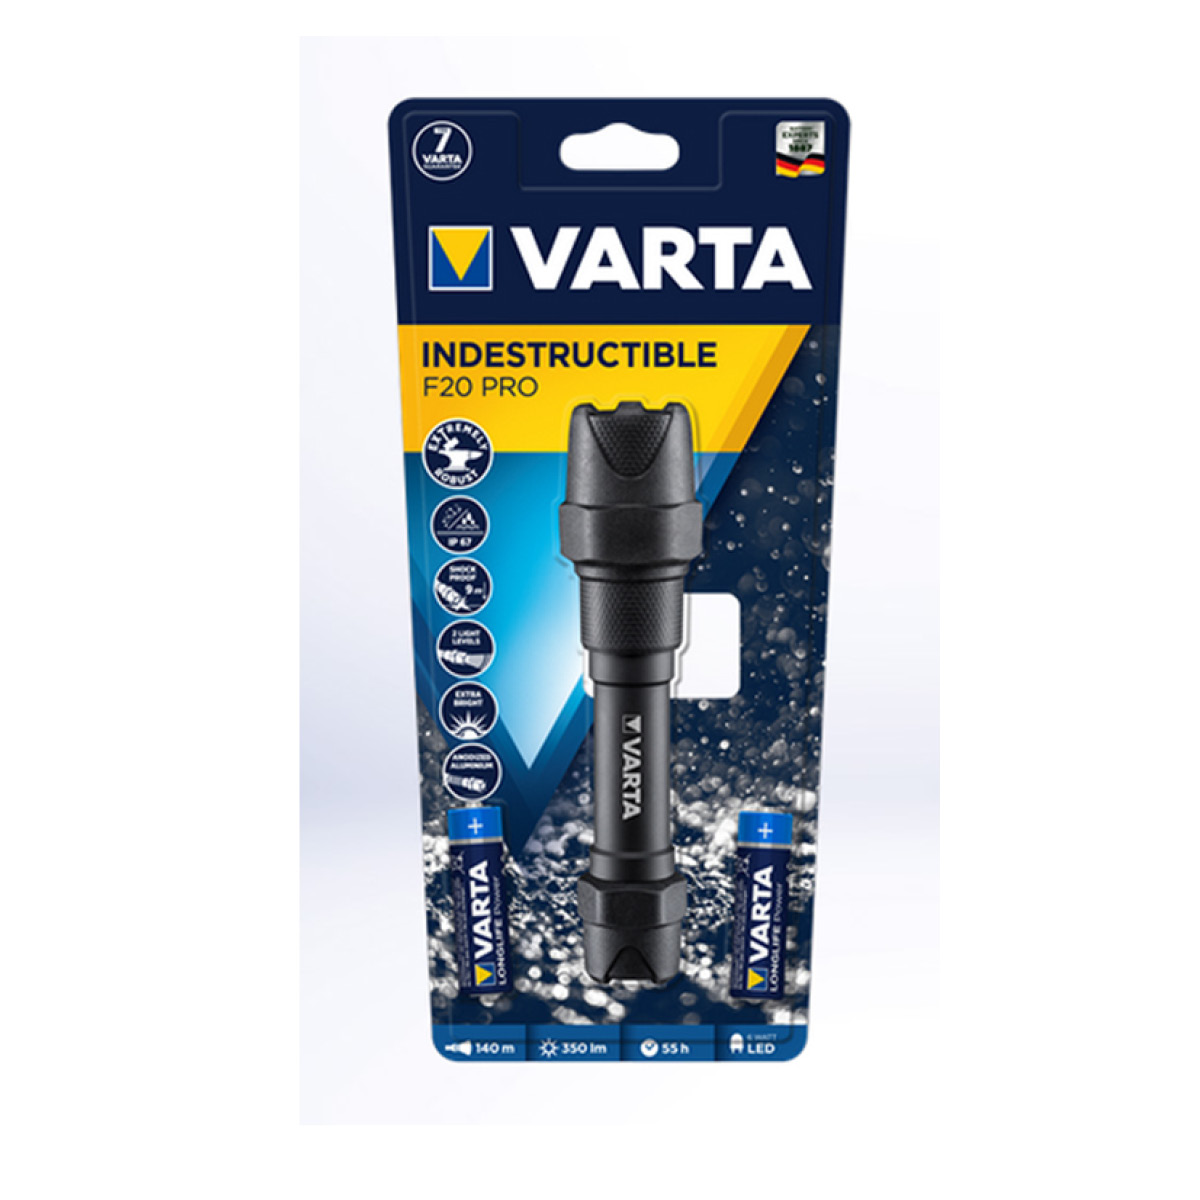 Varta F20 Pro 2AA Taschenlampe mit Batterien